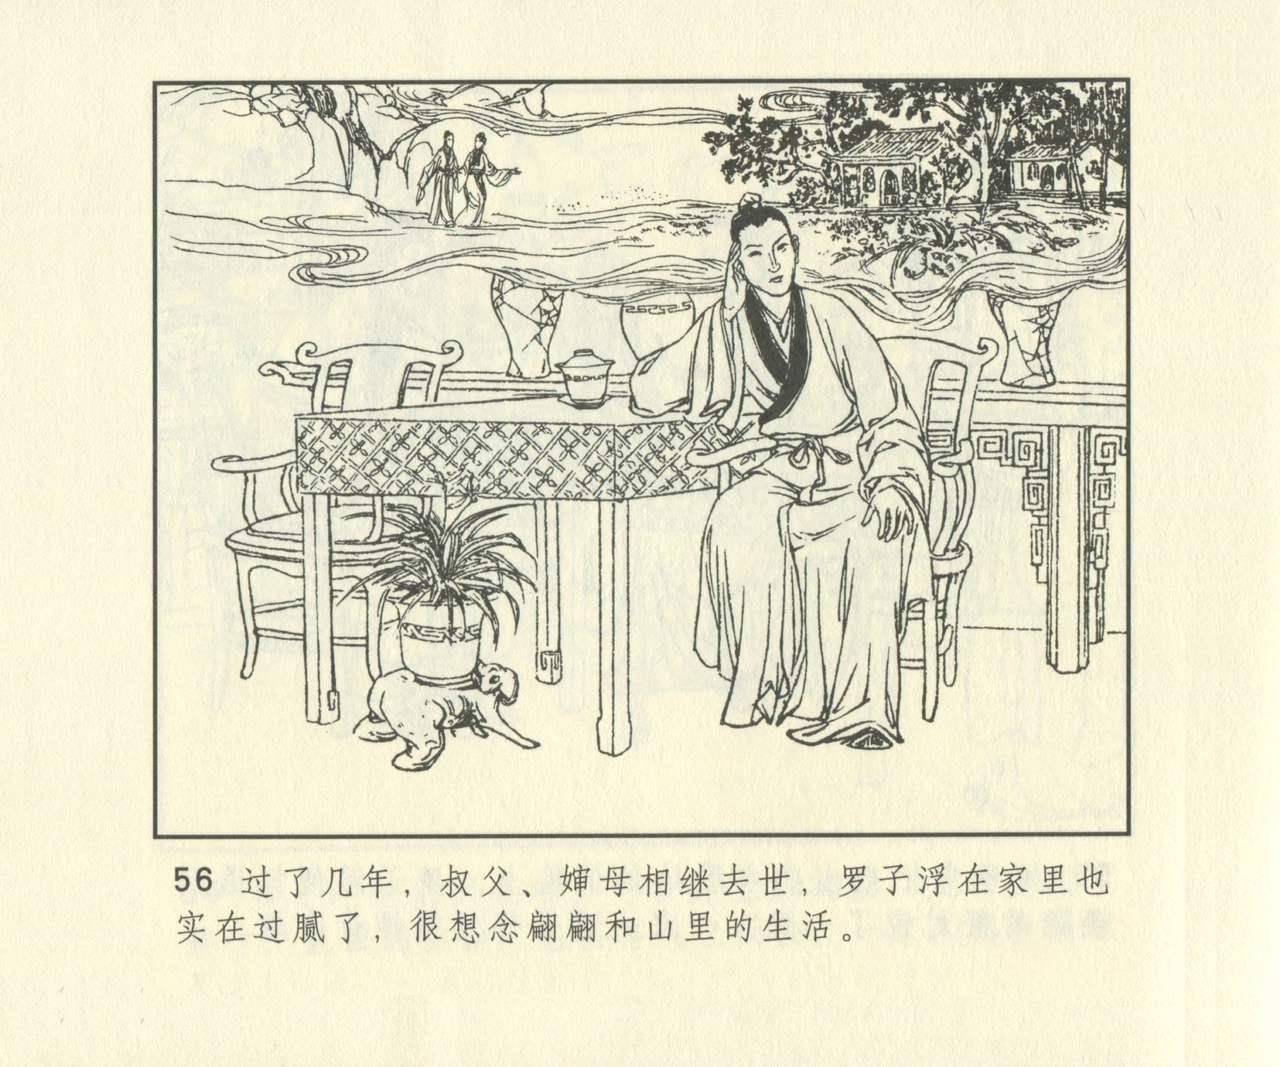 聊斋志异 张玮等绘 天津人民美术出版社 卷二十一 ~ 三十 672